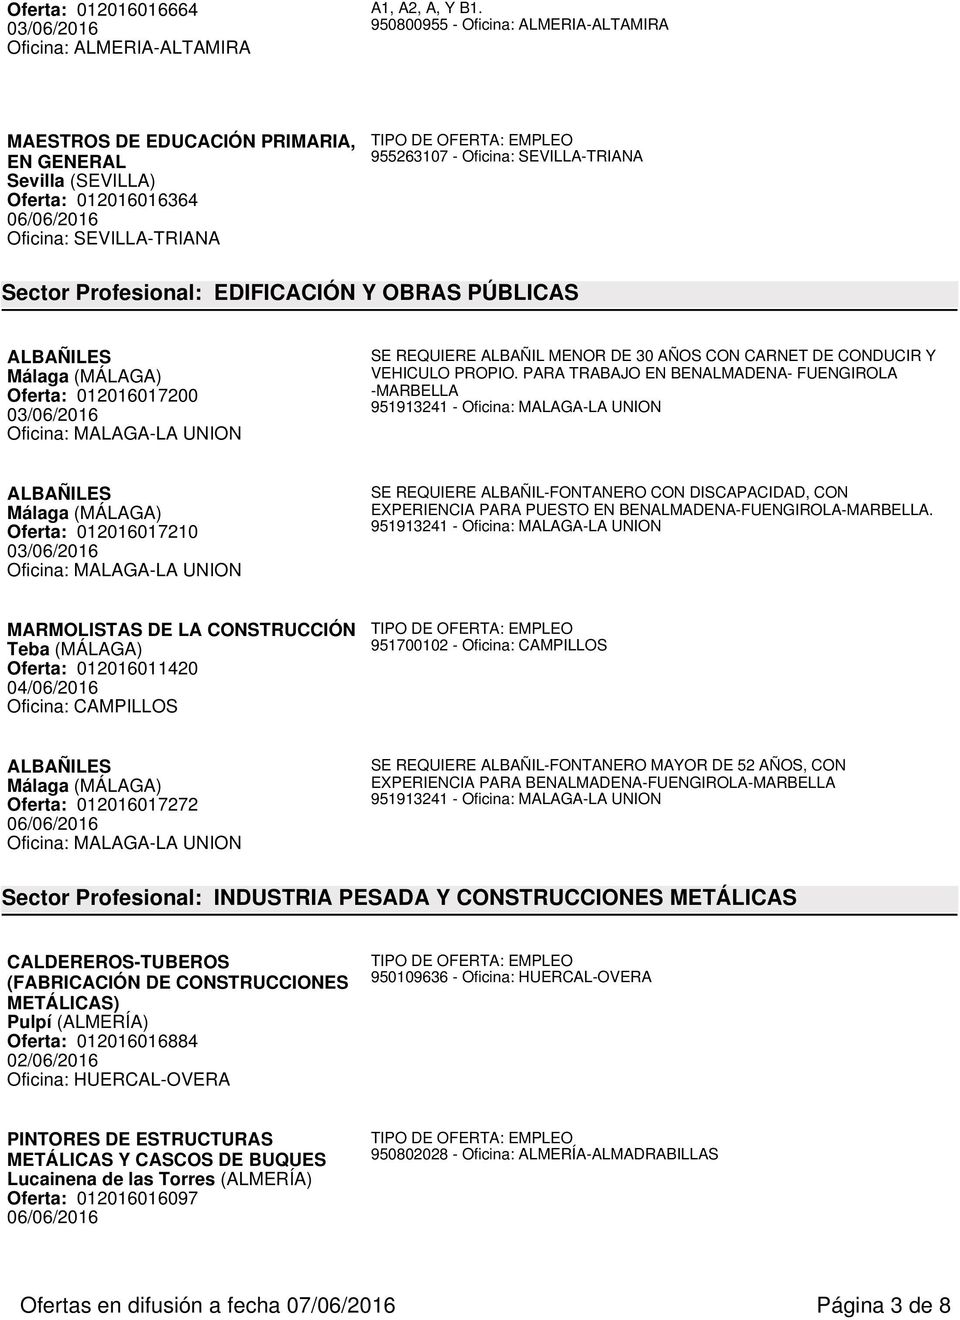 PÚBLICAS ALBAÑILES Málaga (MÁLAGA) Oferta: 012016017200 03/06/2016 Oficina: MALAGA-LA UNION SE REQUIERE ALBAÑIL MENOR DE 30 AÑOS CON CARNET DE CONDUCIR Y VEHICULO PROPIO.